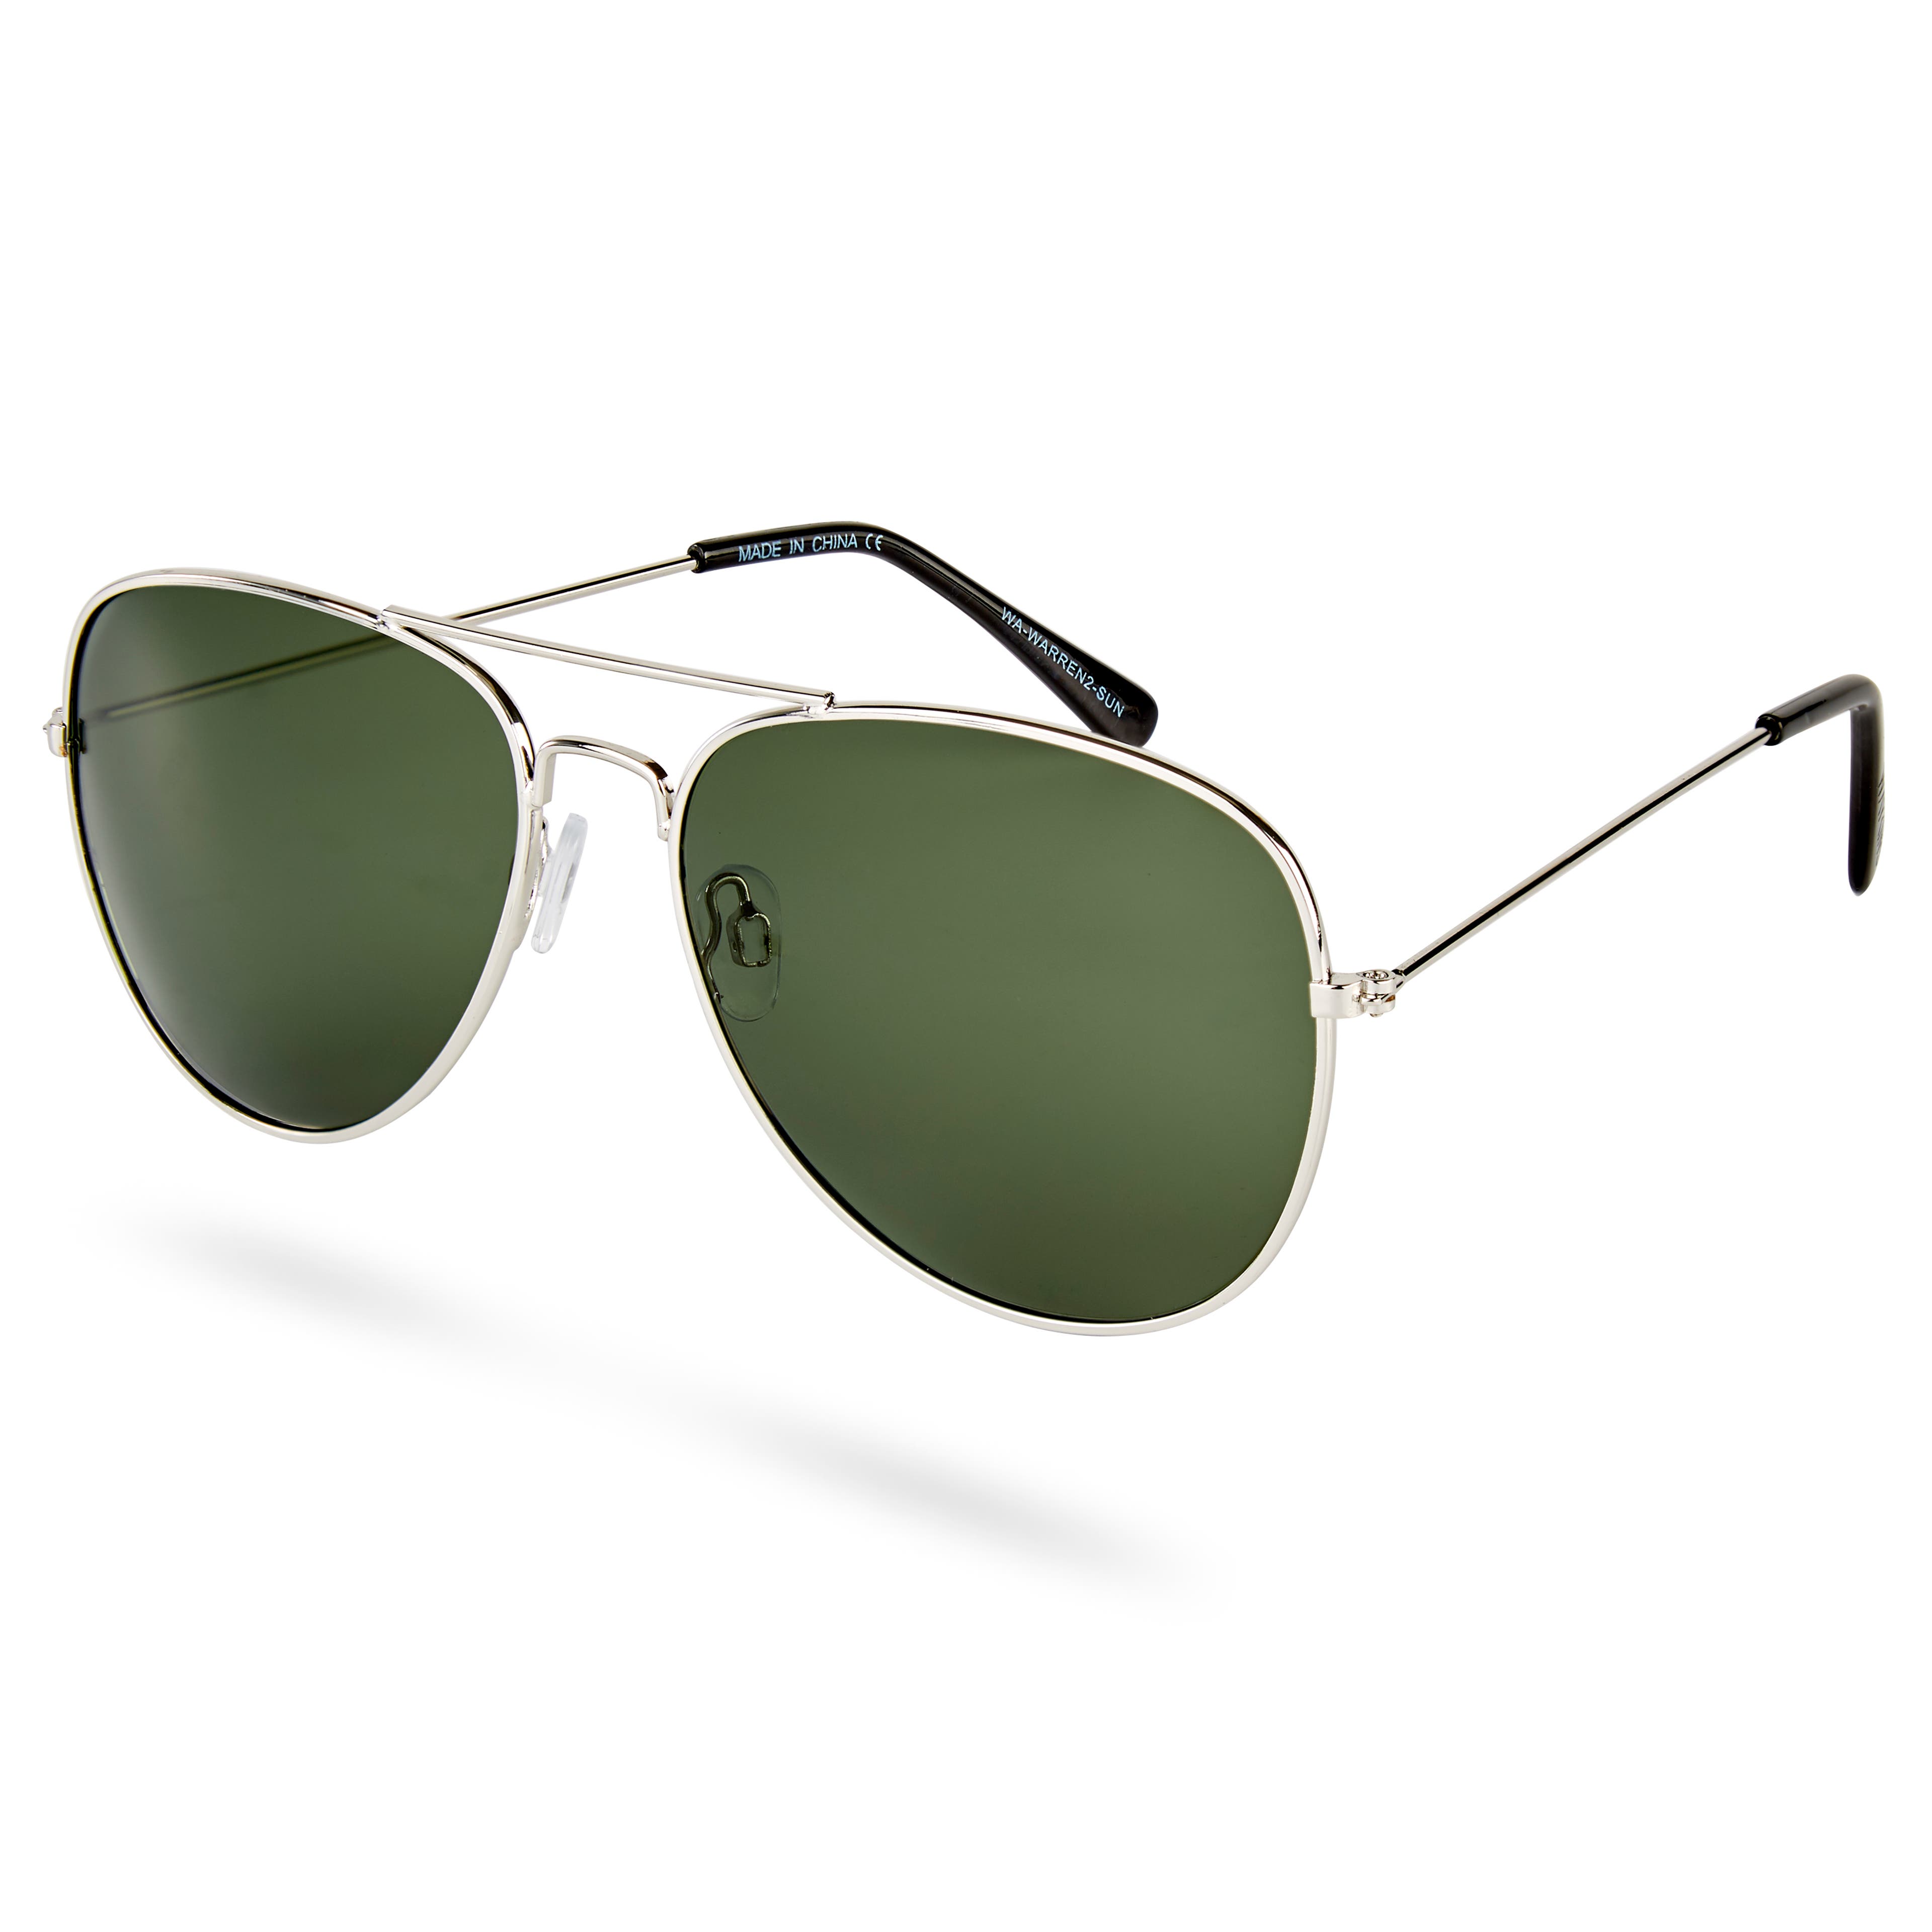 Óculos de Sol Prateados e Verdes Estilo Aviador Warren